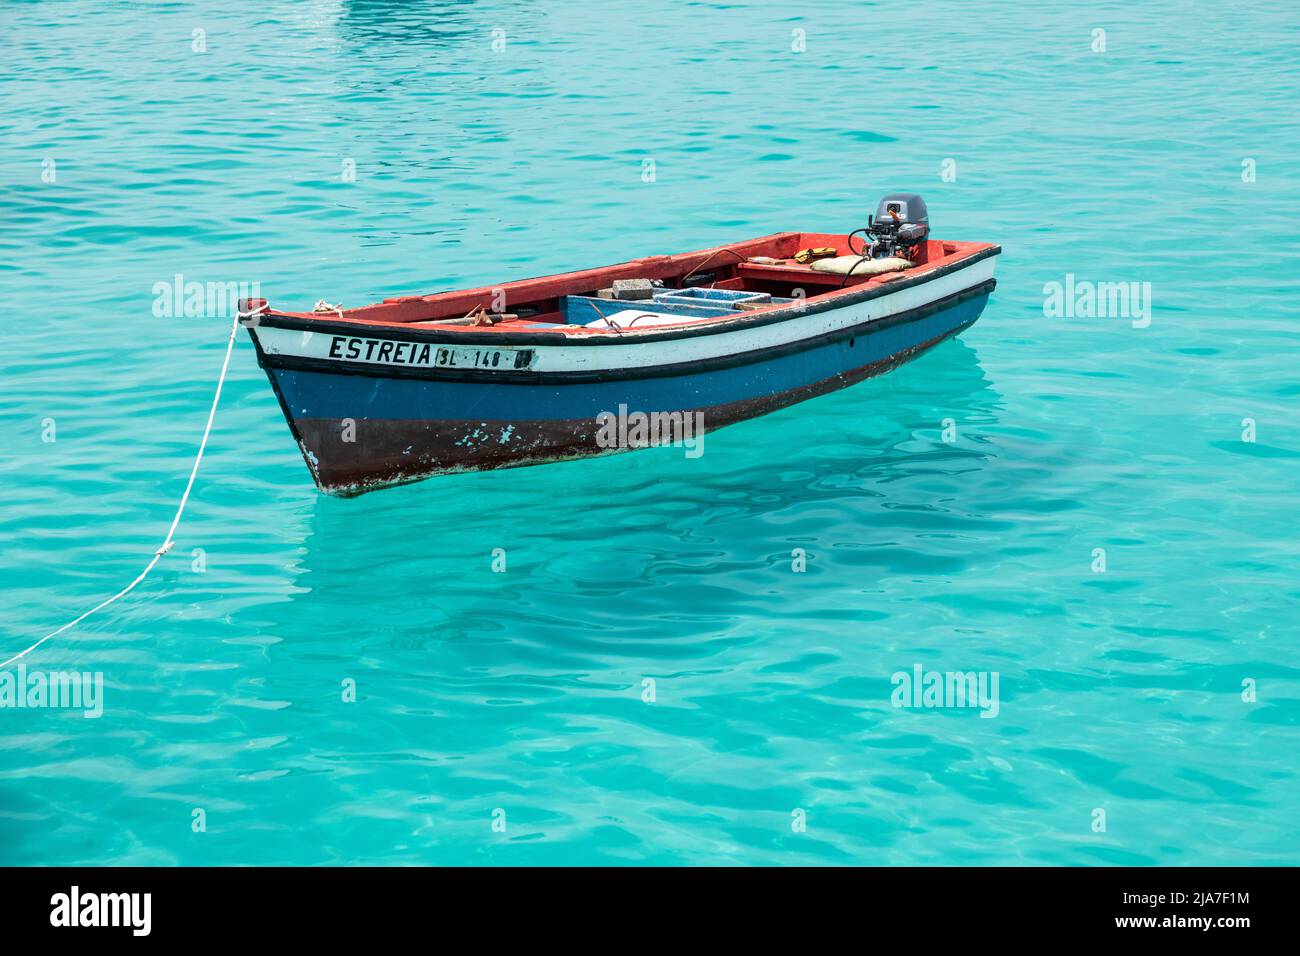 Bateau de pêche en bois rouge, blanc et bleu sur les eaux turquoise de l'Atlantique à Santa Maria, Sal, île du Cap-Vert, îles Cabo Verde, Afrique Banque D'Images